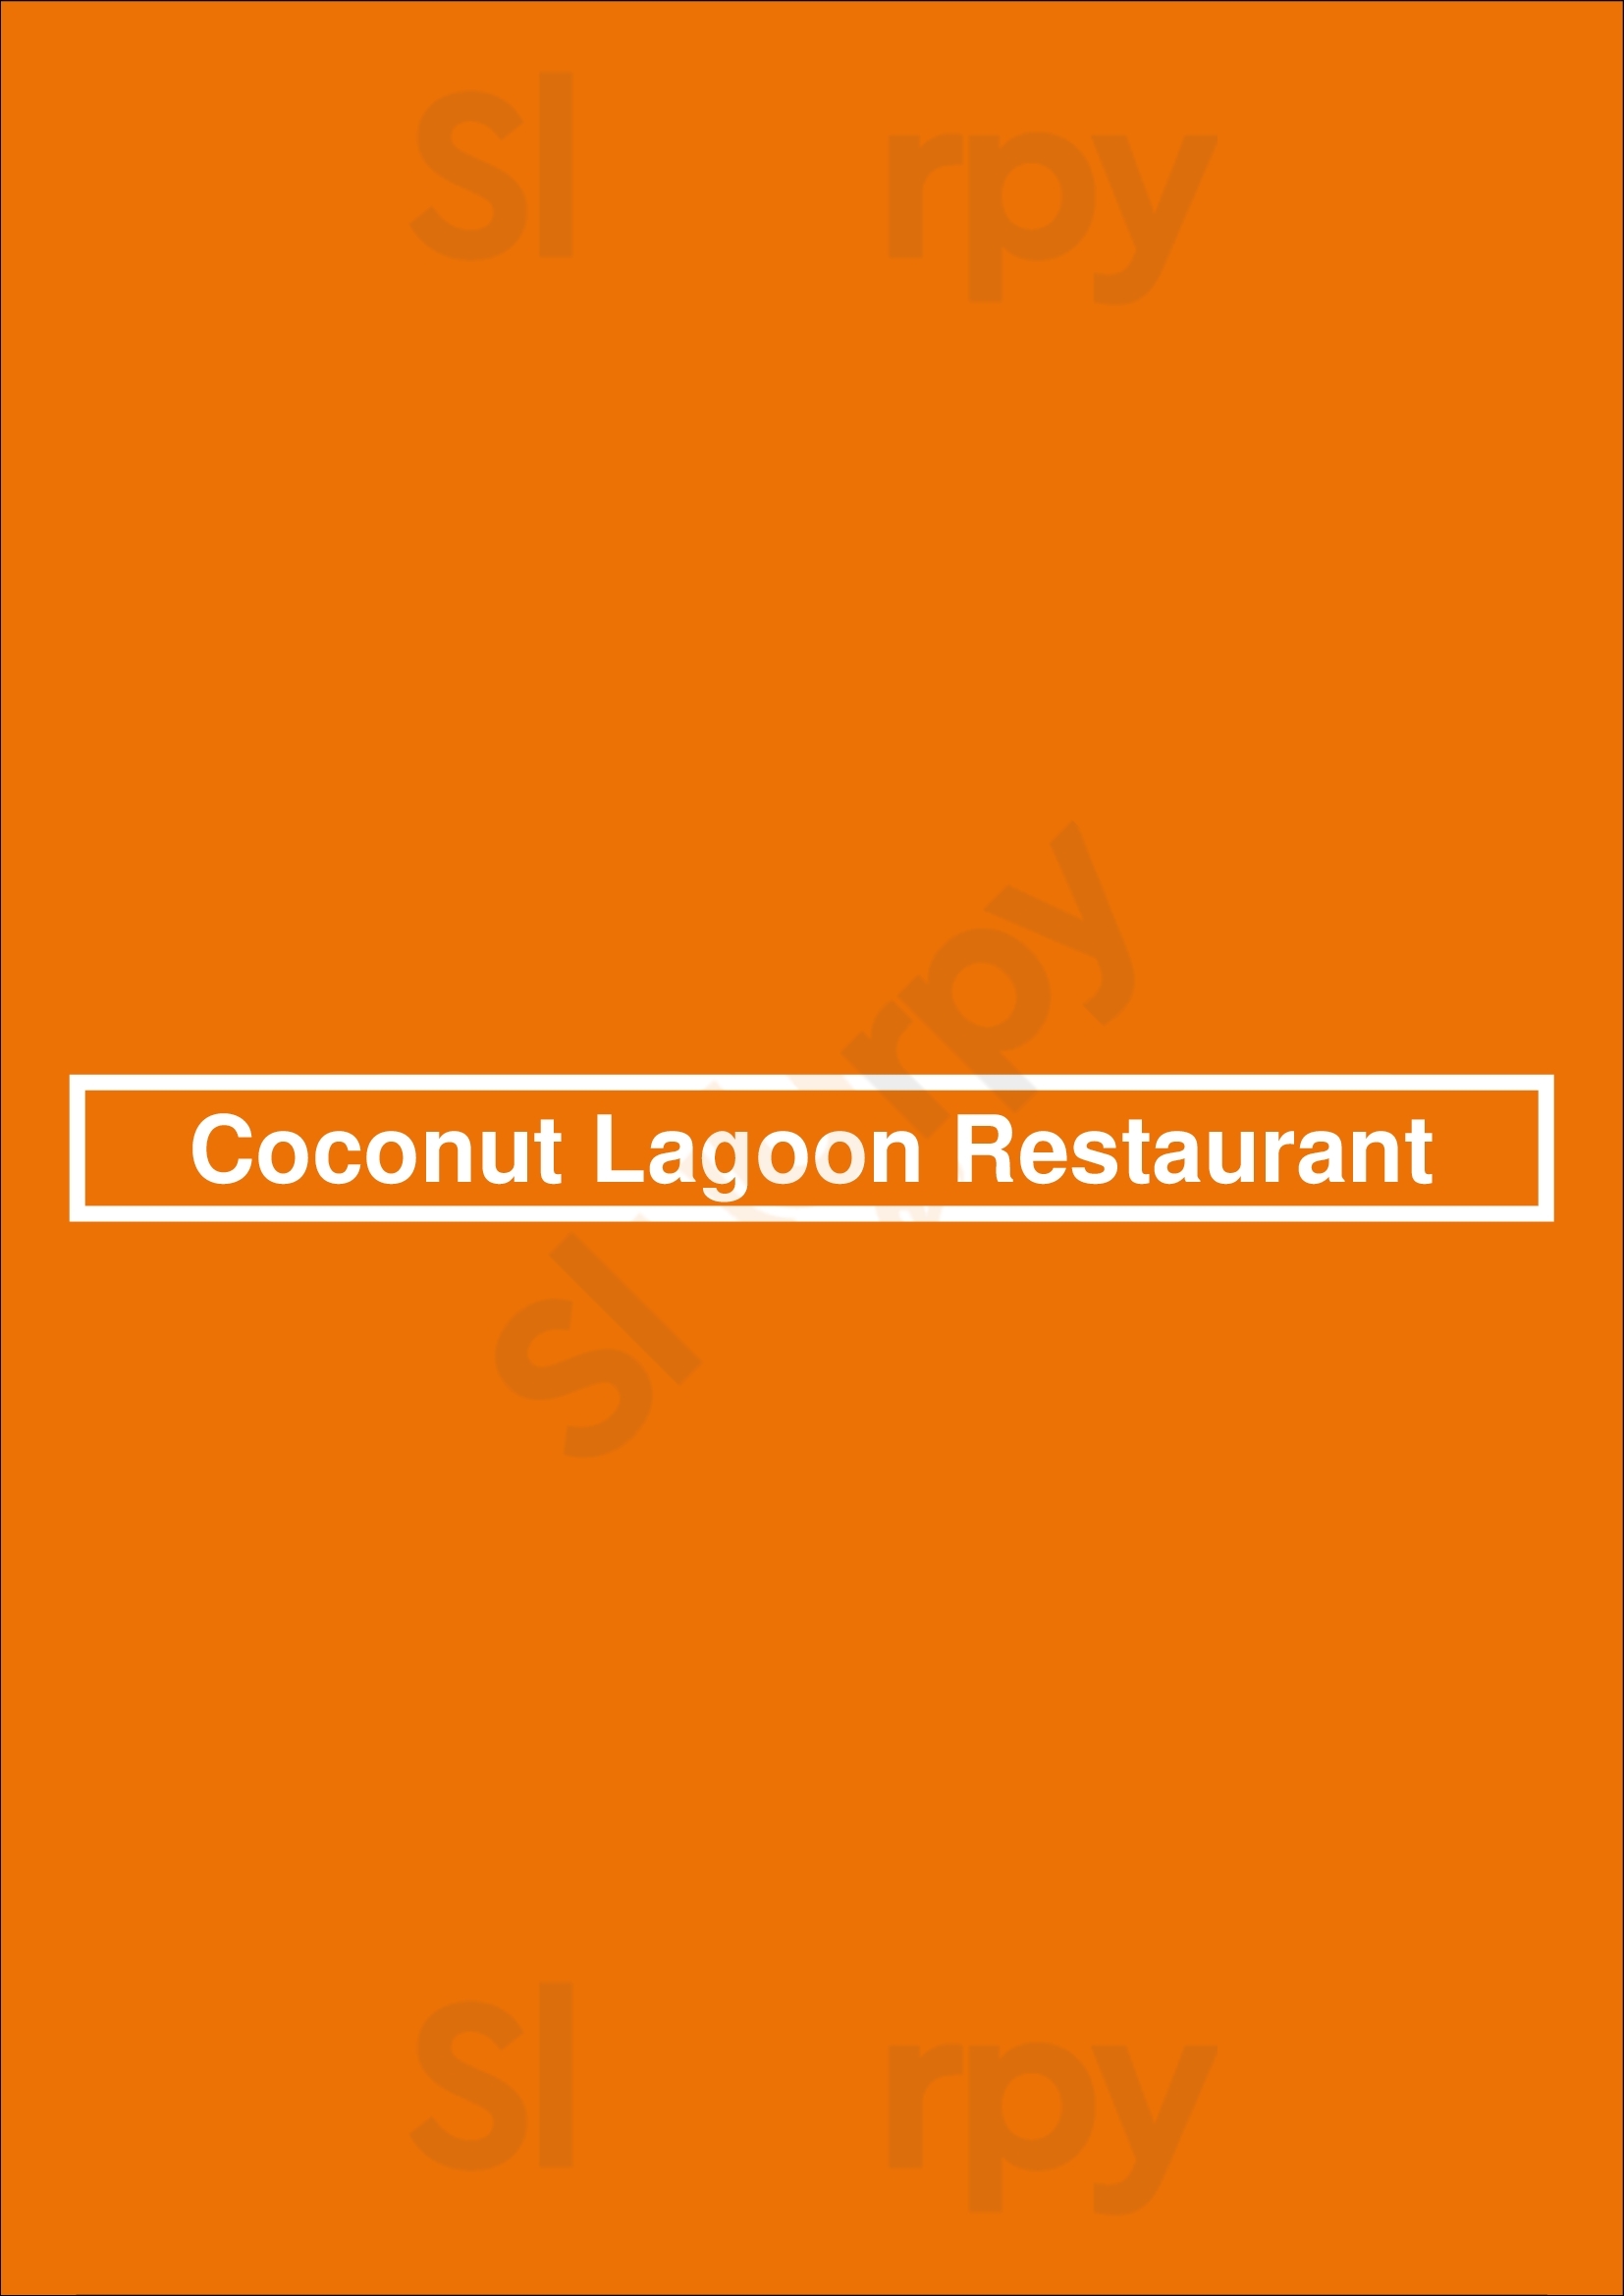 Coconut Lagoon Ottawa Menu - 1